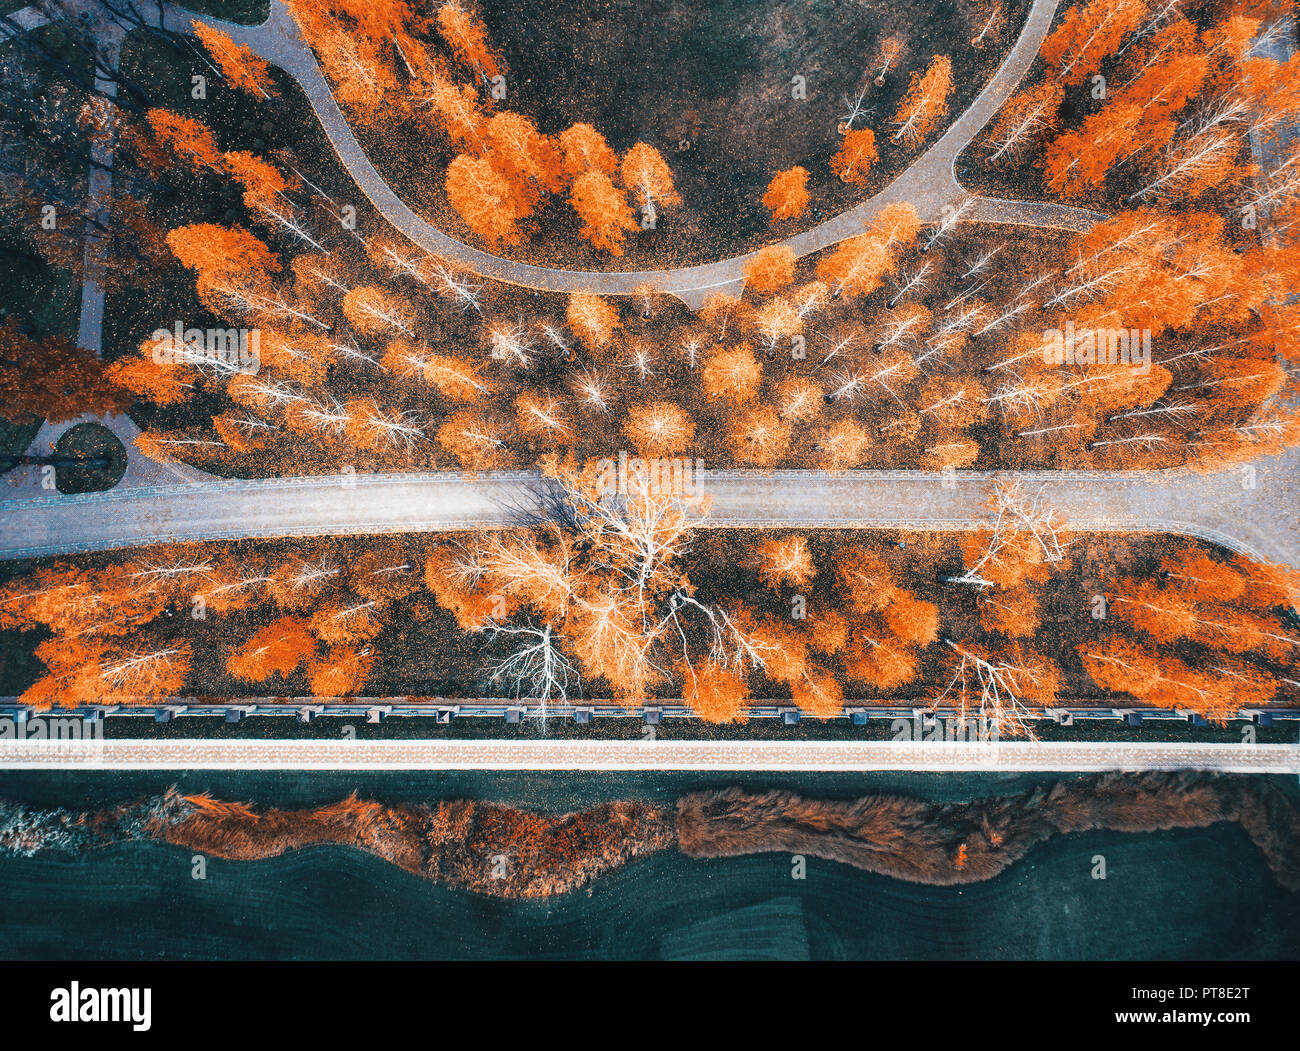 Vista aerea di colori d'autunno park in Europa in serata. Paesaggio con alberi con foglie d'arancio, campo con erba verde e percorsi per l'autunno. Scena Foto Stock